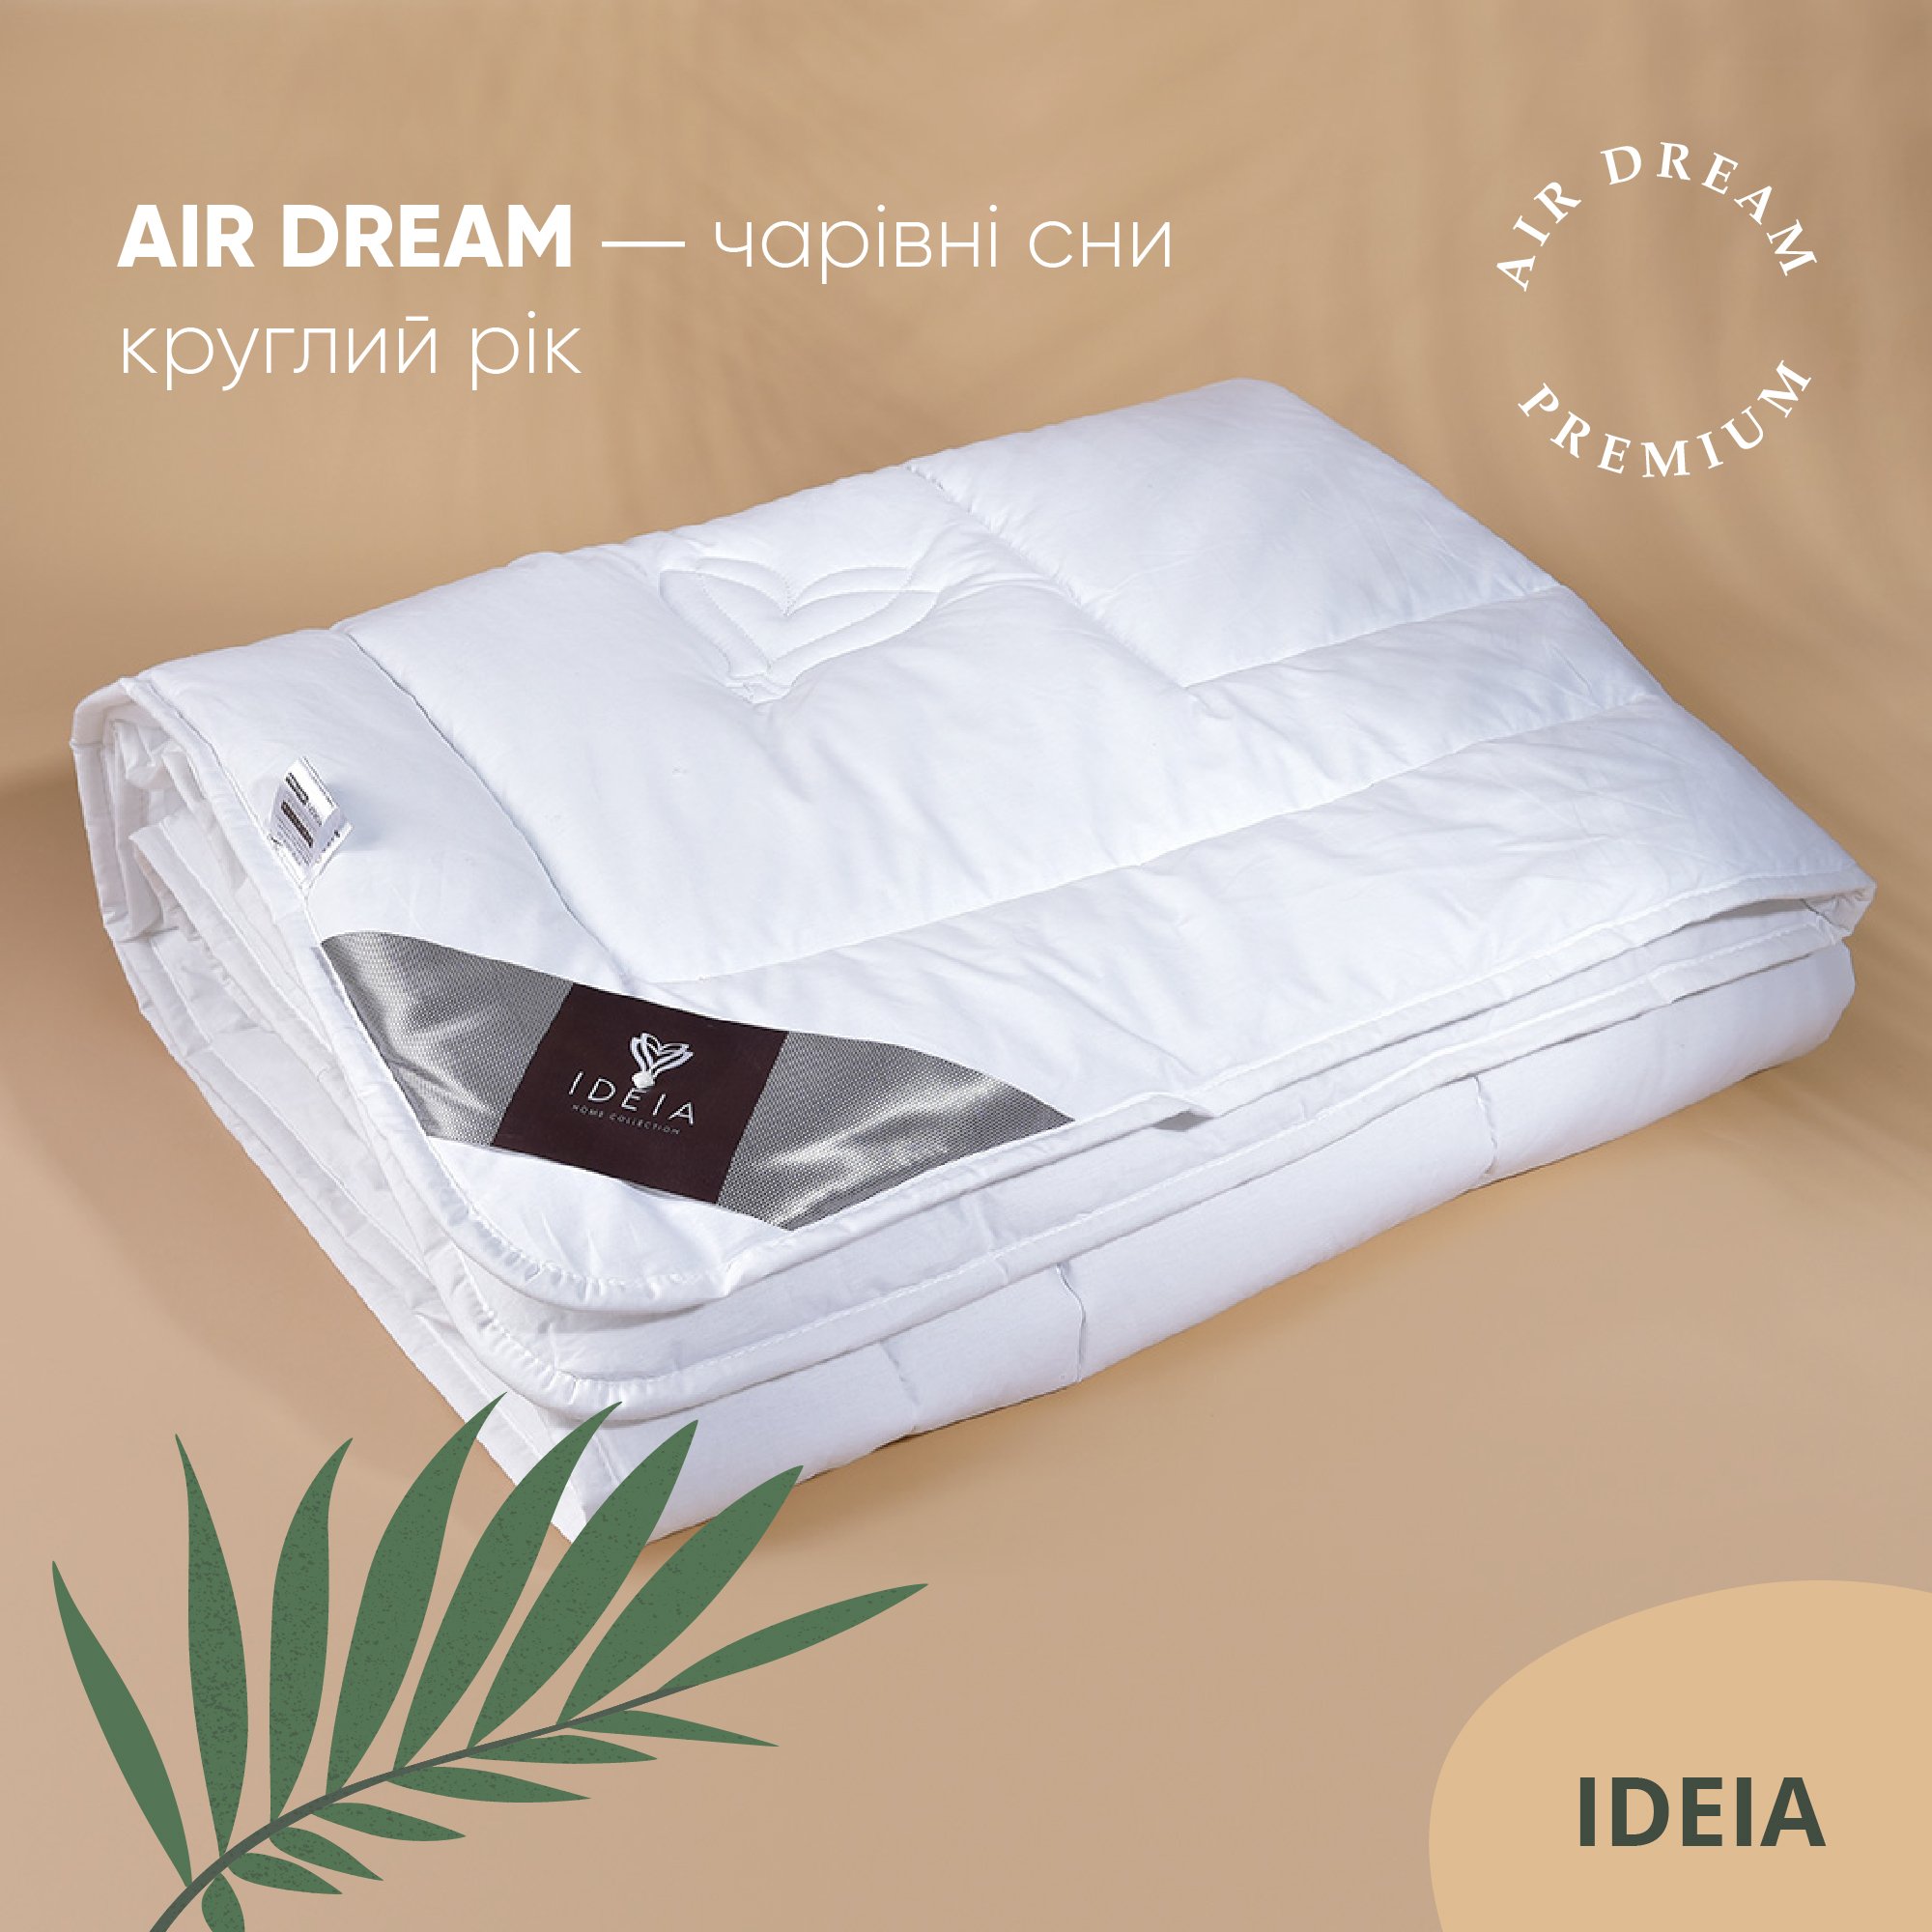 Ковдра Ideia Air Dream Premium зимова, 210х175, білий (8-11698) - фото 8